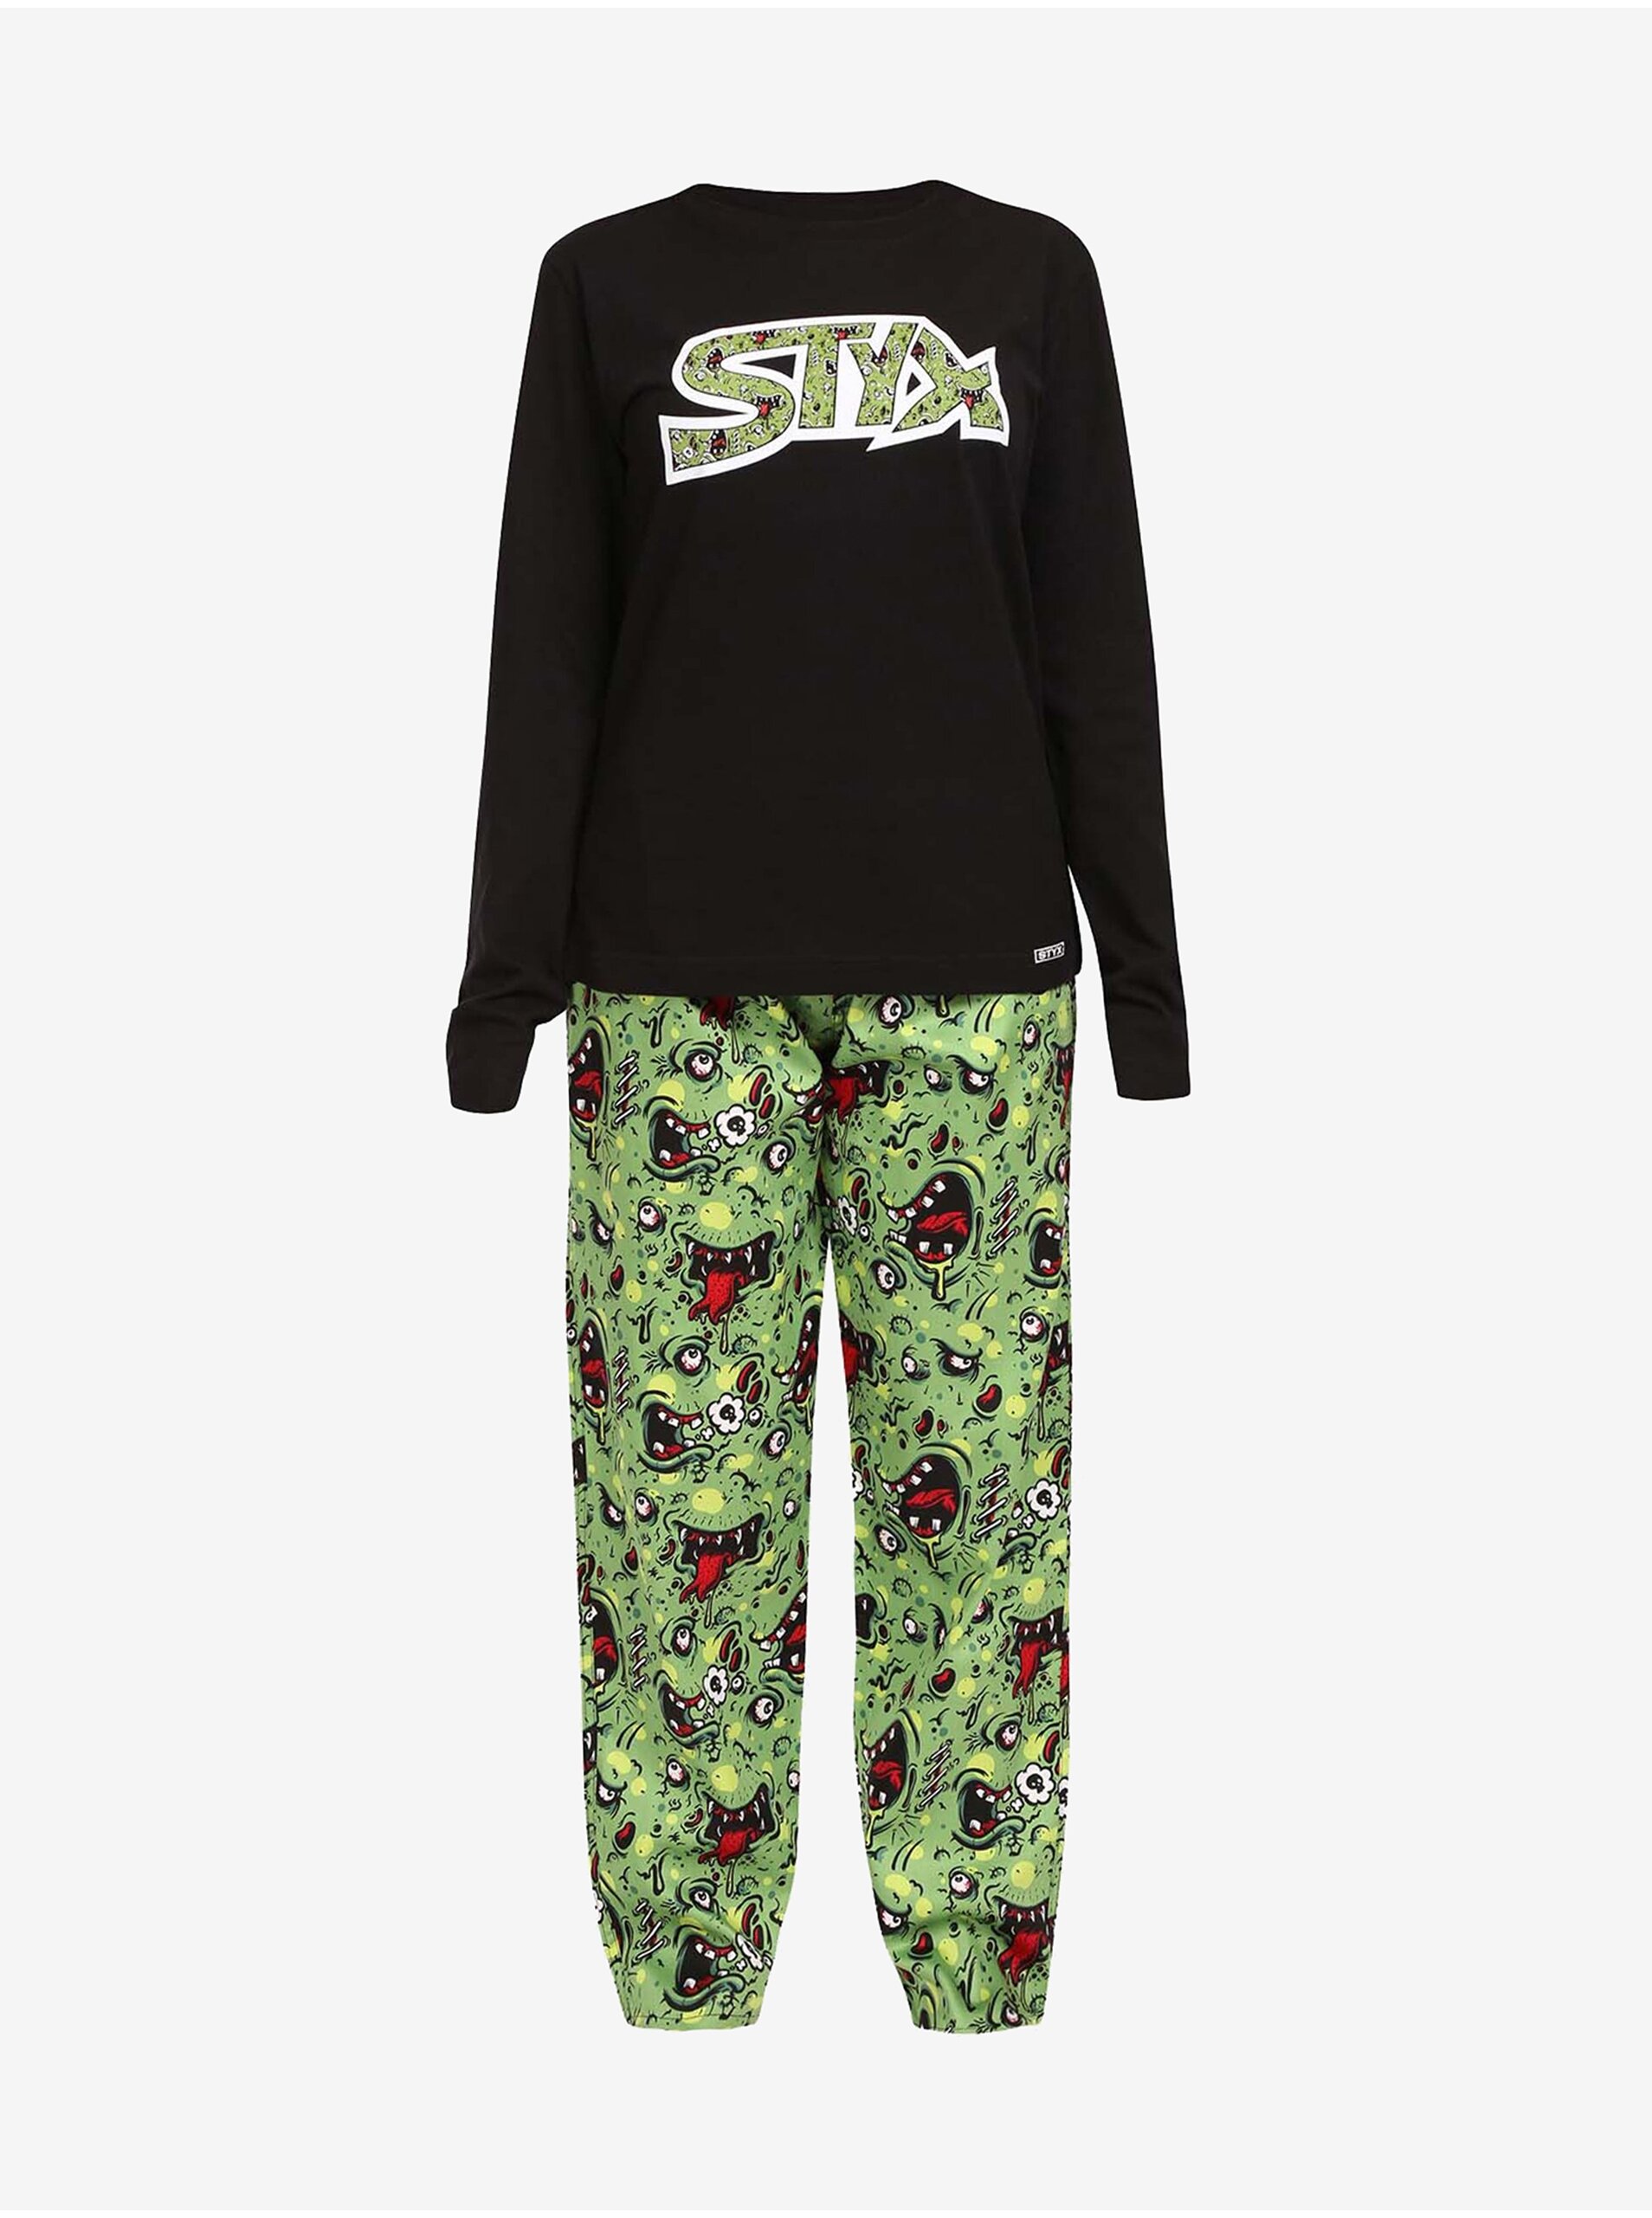 Lacno Čierno-zelené dámske pyžamo Styx Zombie